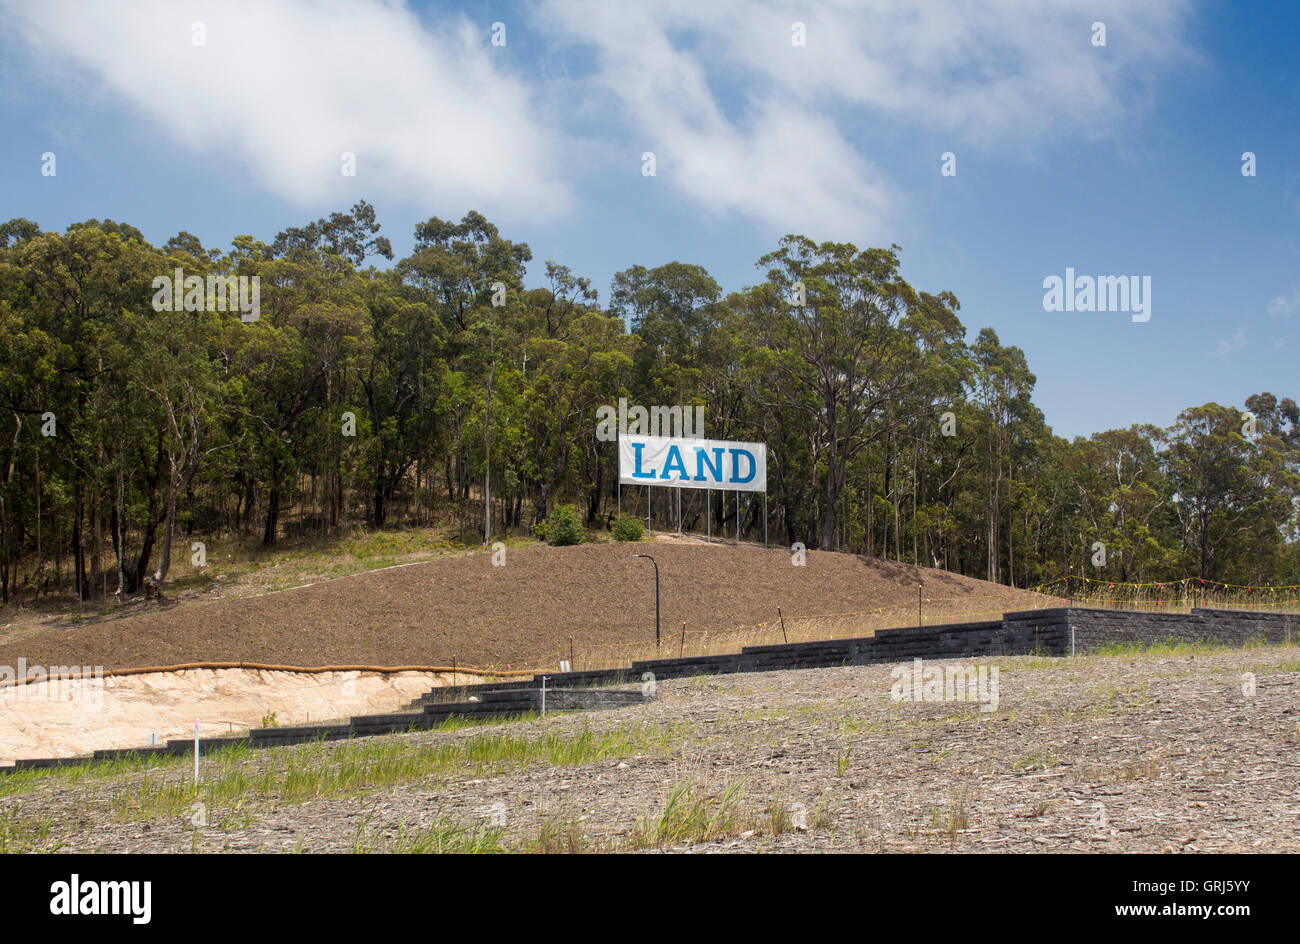 Signe de terre terrain à vendre a vendre terrain de développement de la propriété des forêts d'Eucalyptus bushland bush derrière NSW Australie Banque D'Images